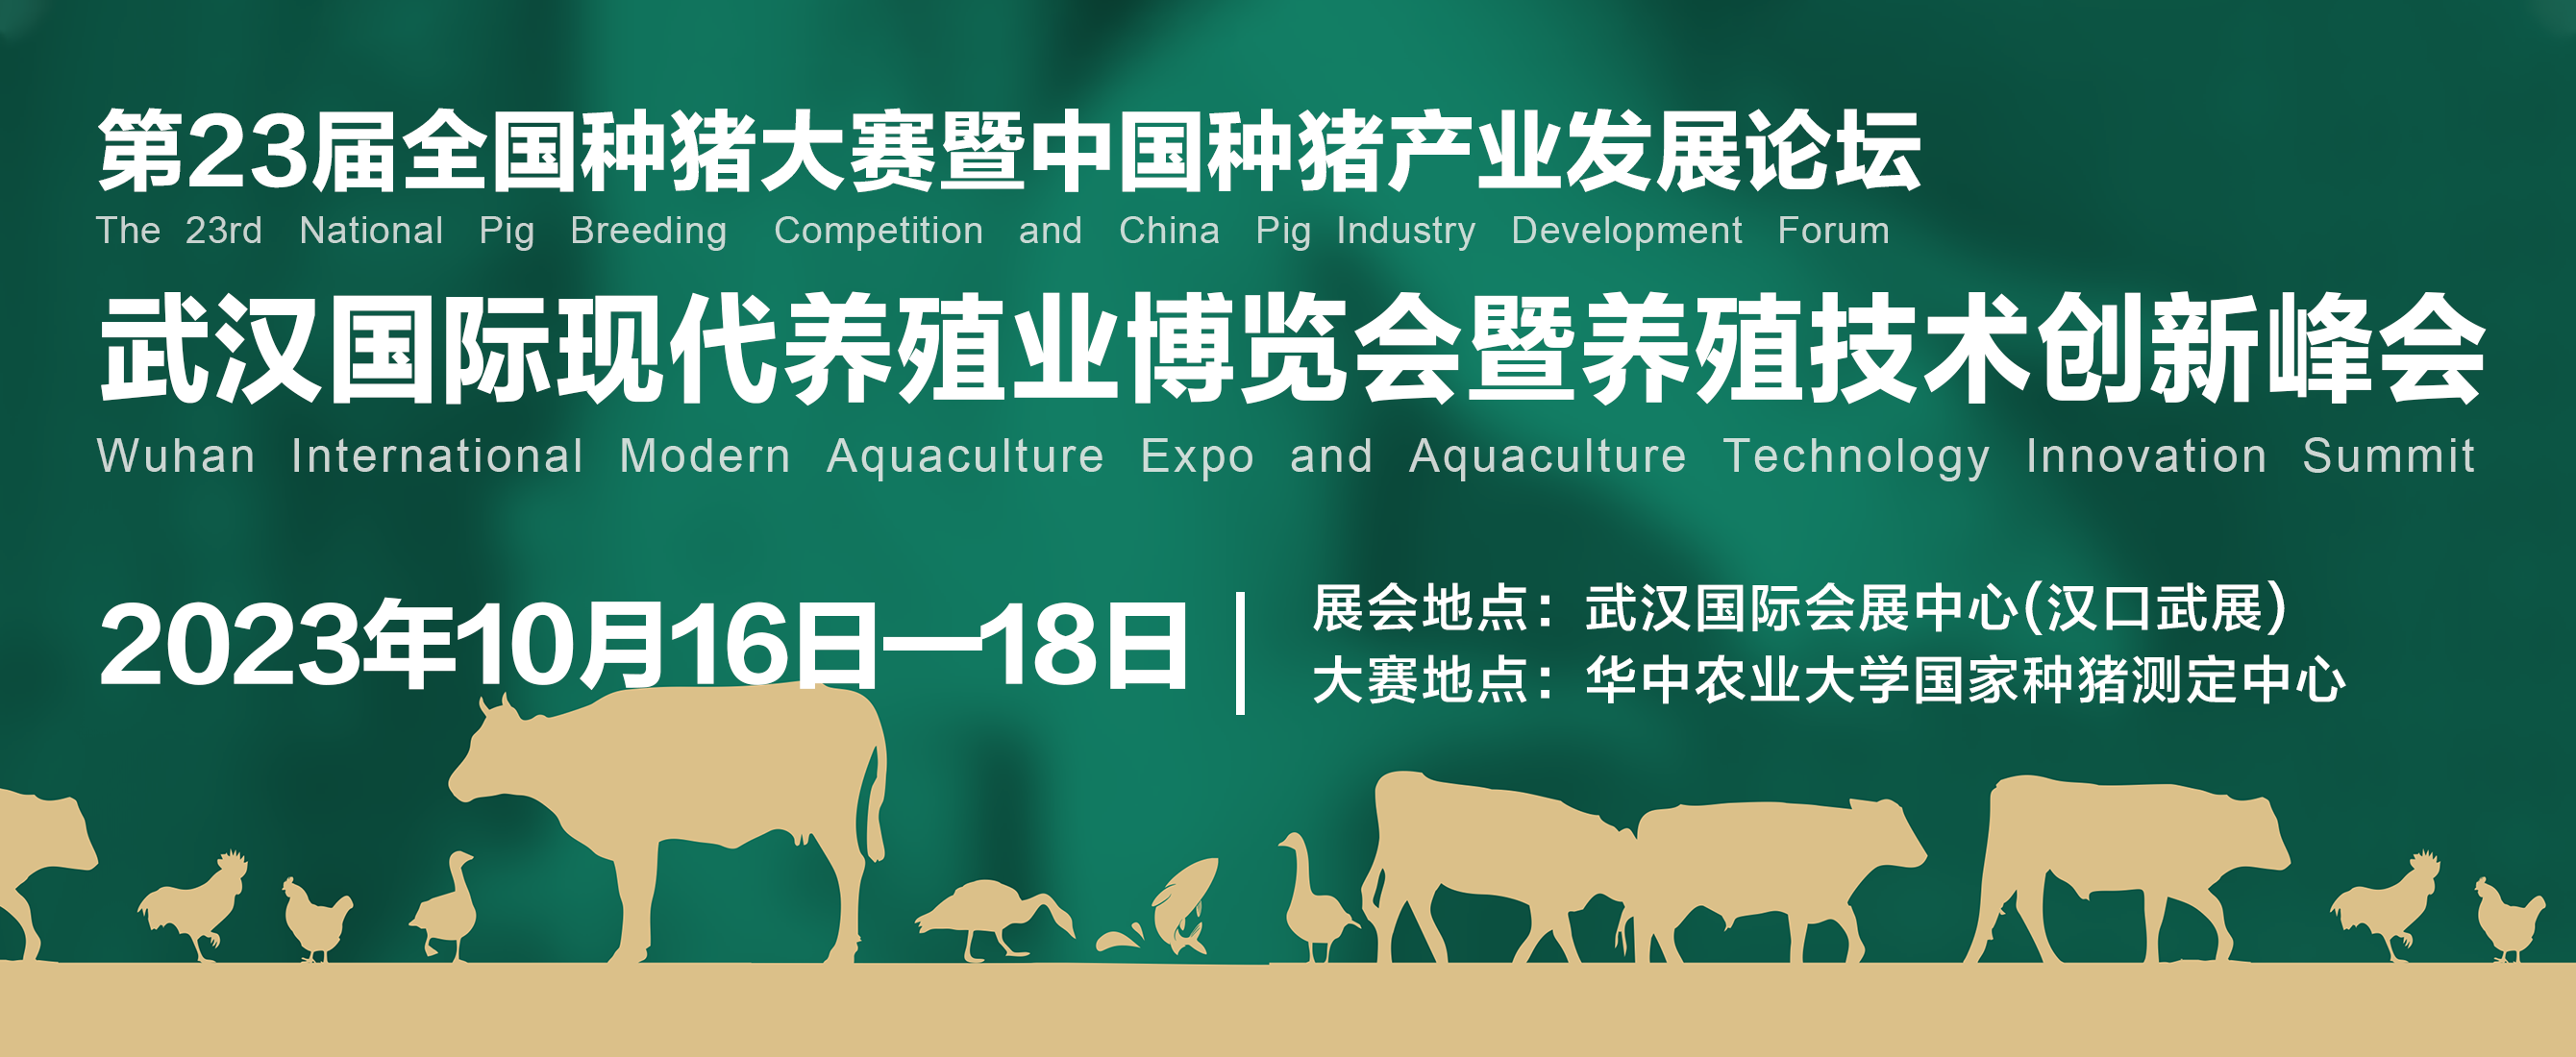 武汉国际现代养殖业博览会暨养殖技术创新峰会